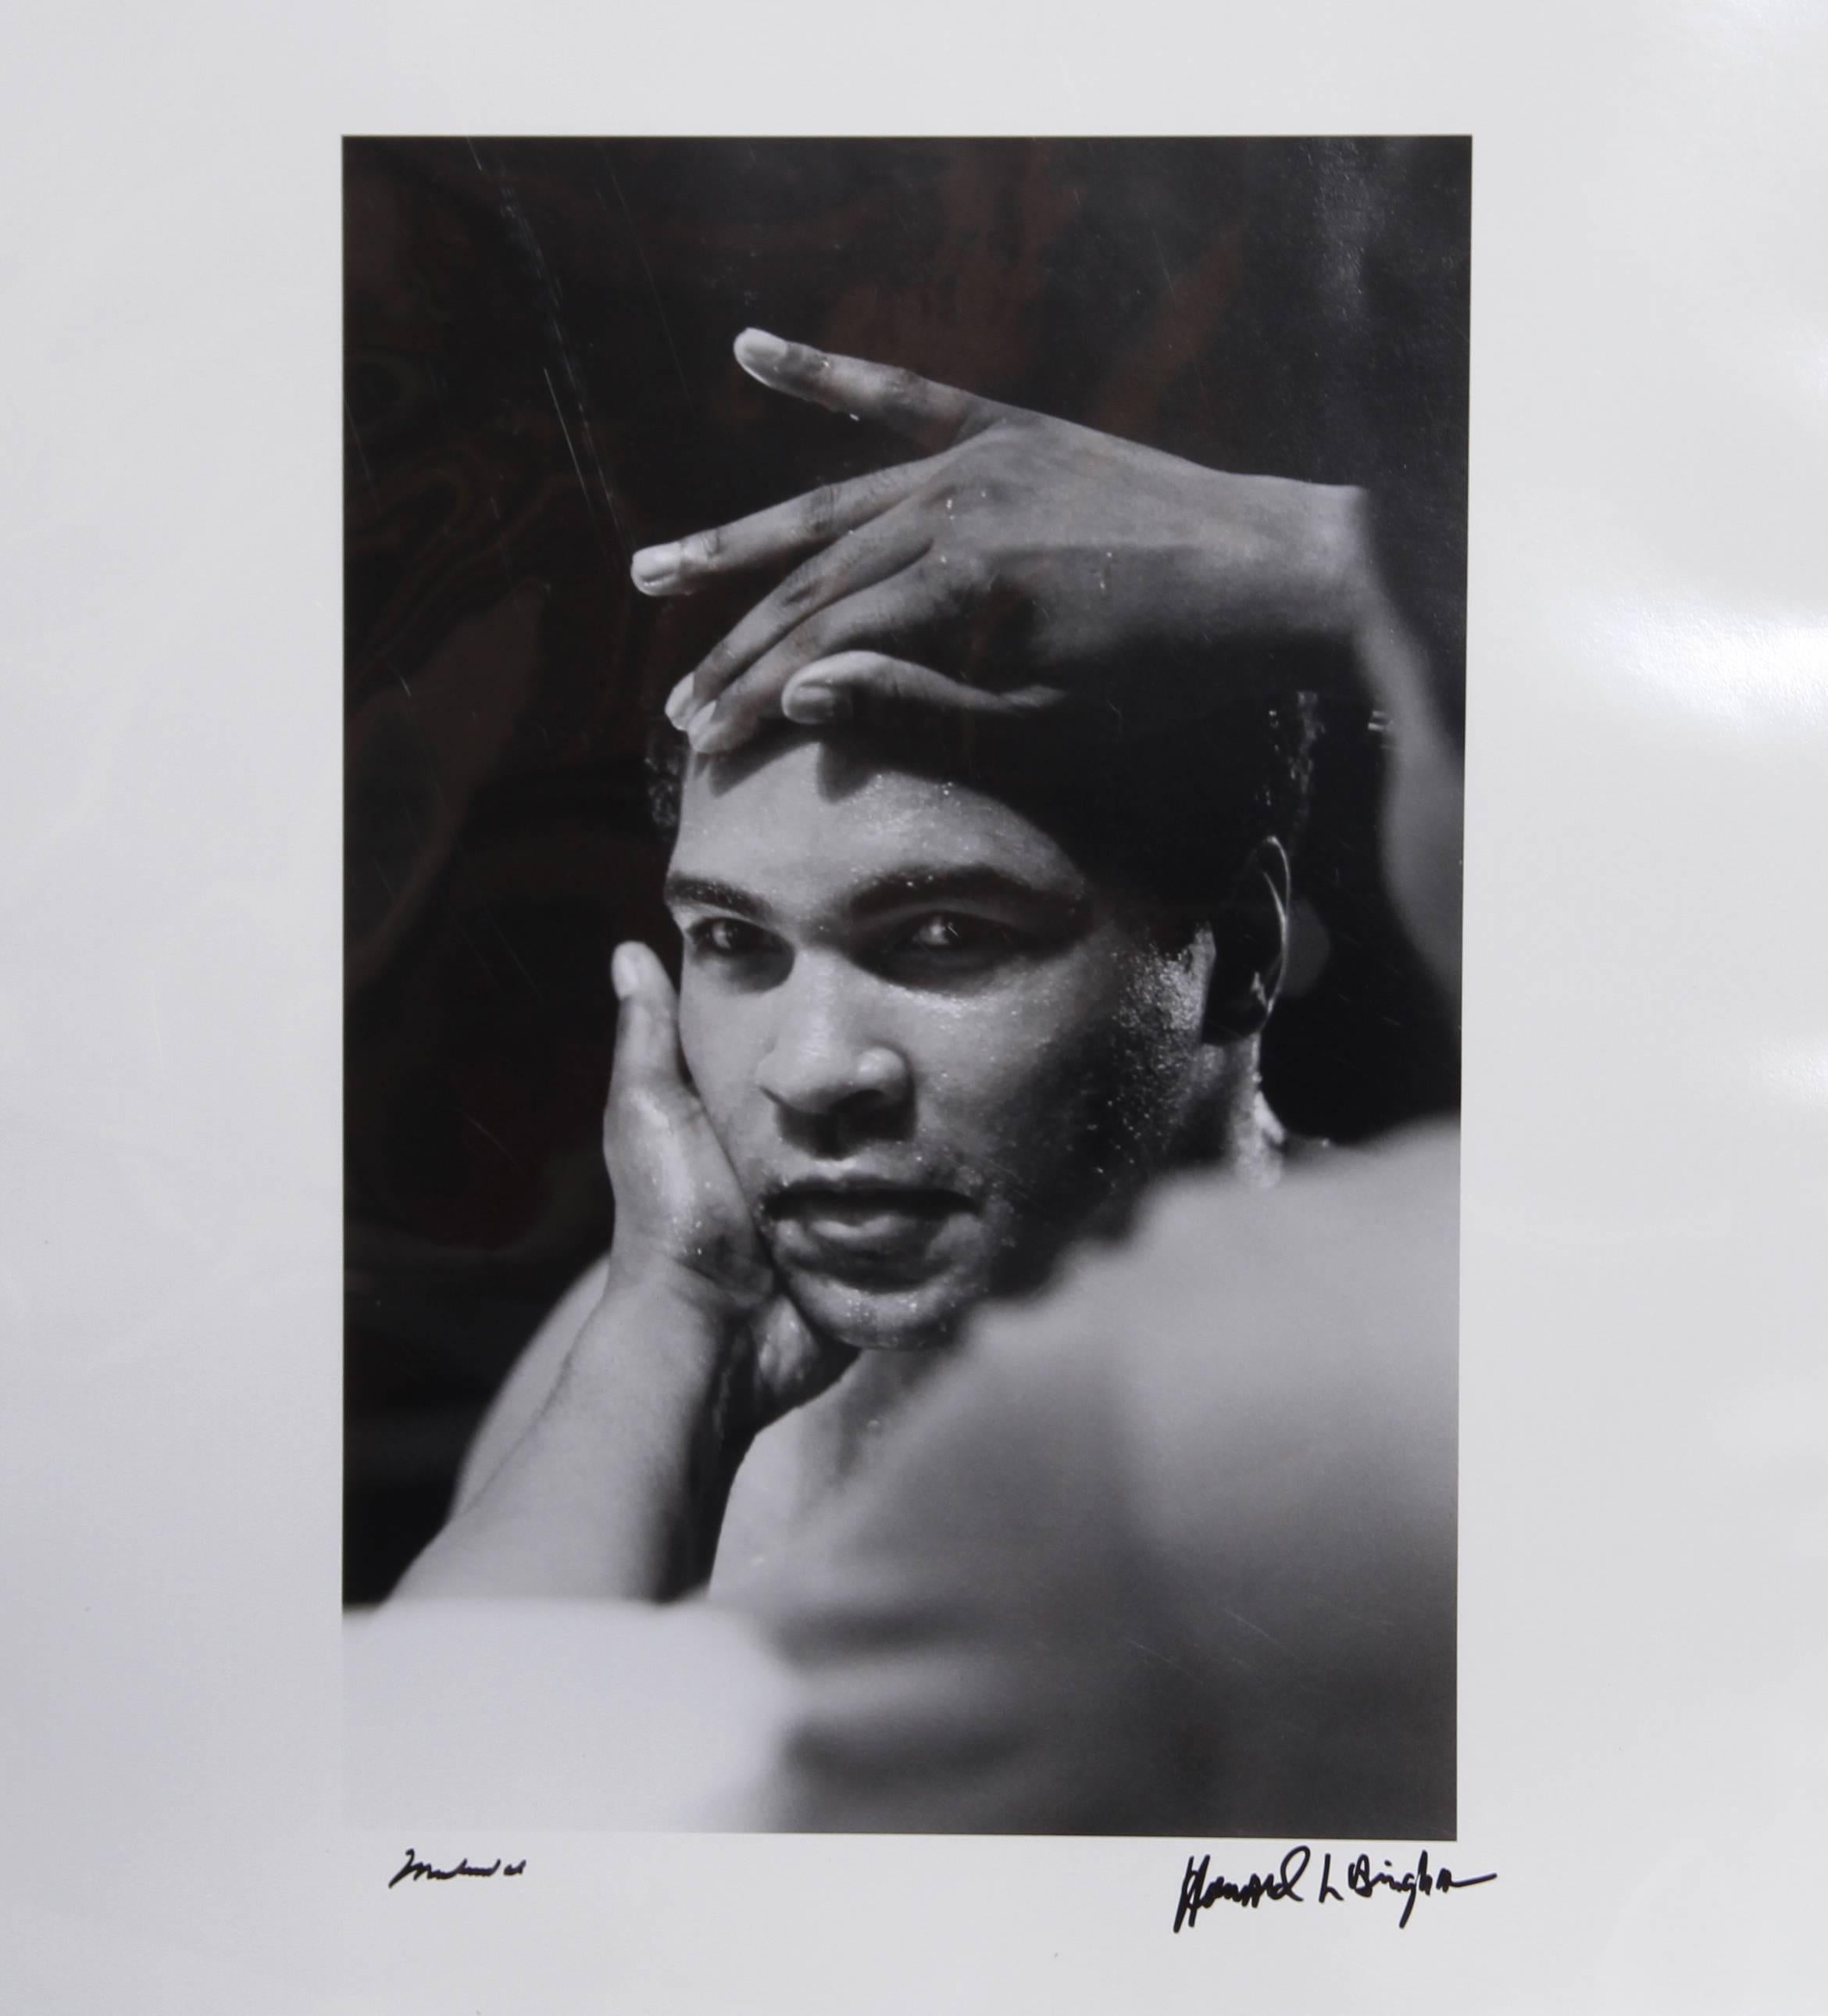 Artiste 1 : Jeff Koons, américain (1954 - ) 
Artiste 2 : Howard L. Bingham, américain (1939 - )

Titre : GOAT : Un hommage à Muhammad Ali - Edition CHAMPS

Livre : Livre relié dans une boîte à clapet, signé et numéroté sur le frontispice par les